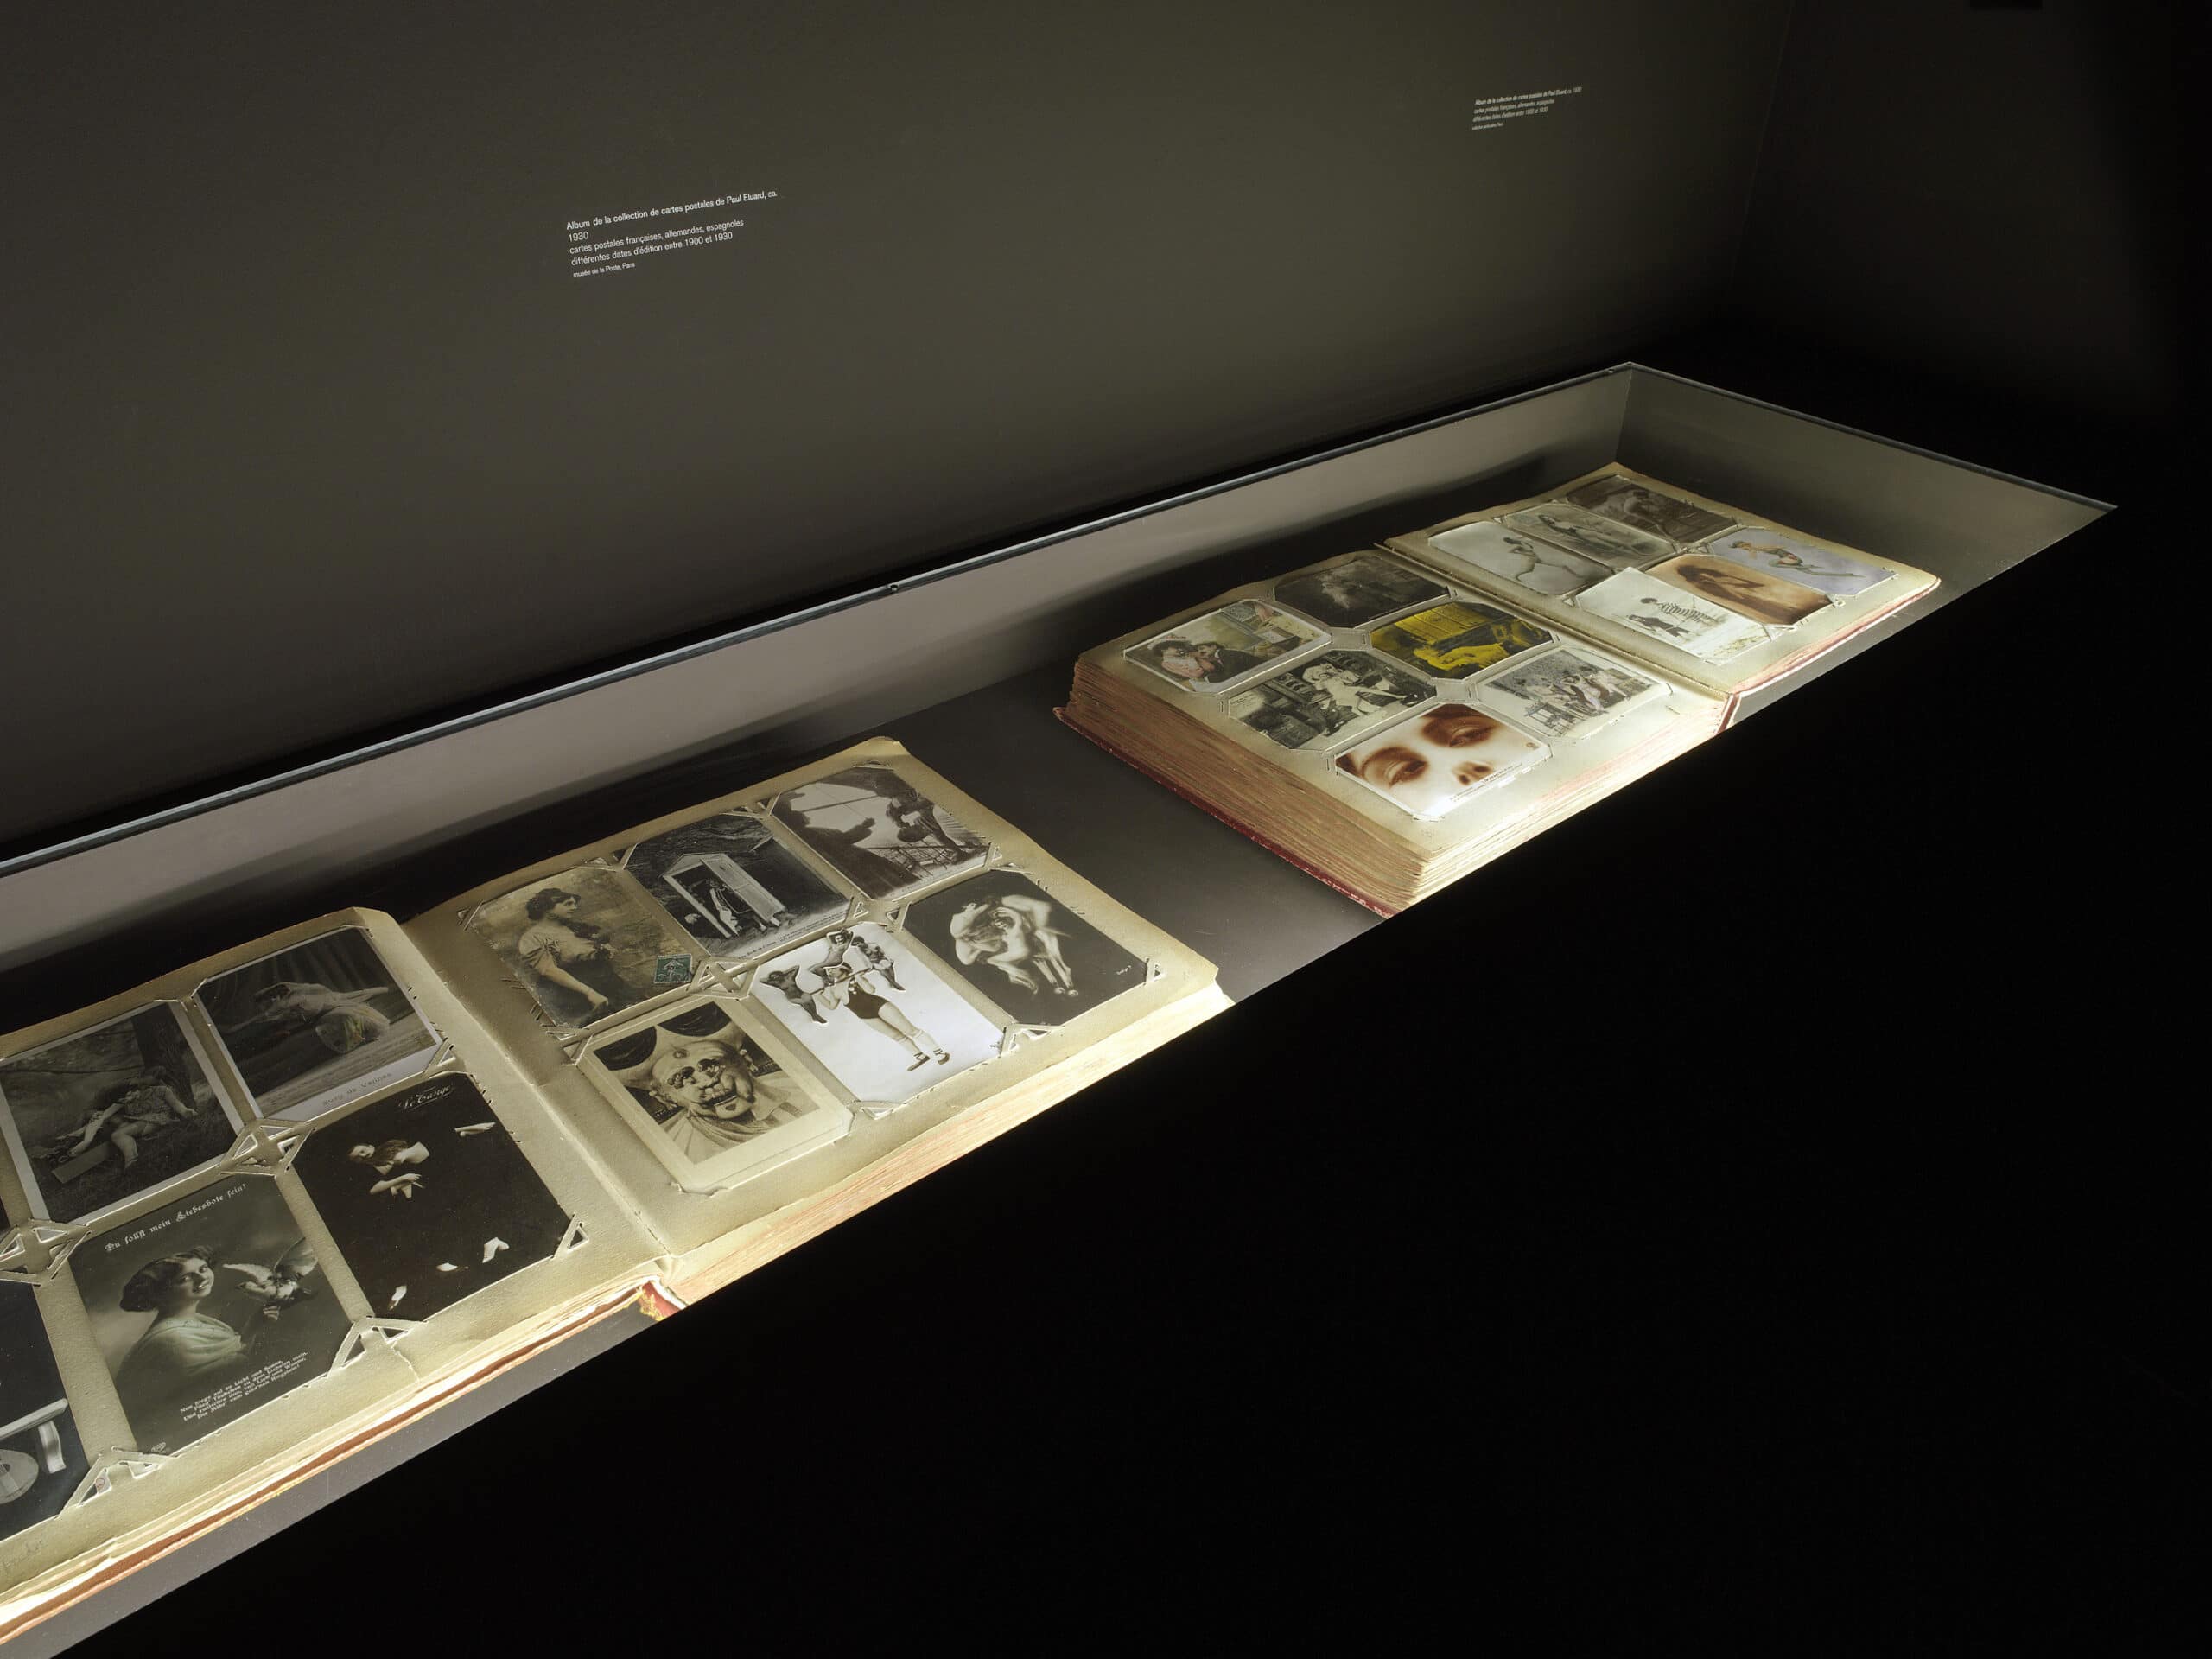 Albums de la collection de cartes postales de Paul Éluard, vers 1930, vue de l’exposition « La photographie timbrée », Paris Jeu de Paume / Hôtel de Sully, 2007